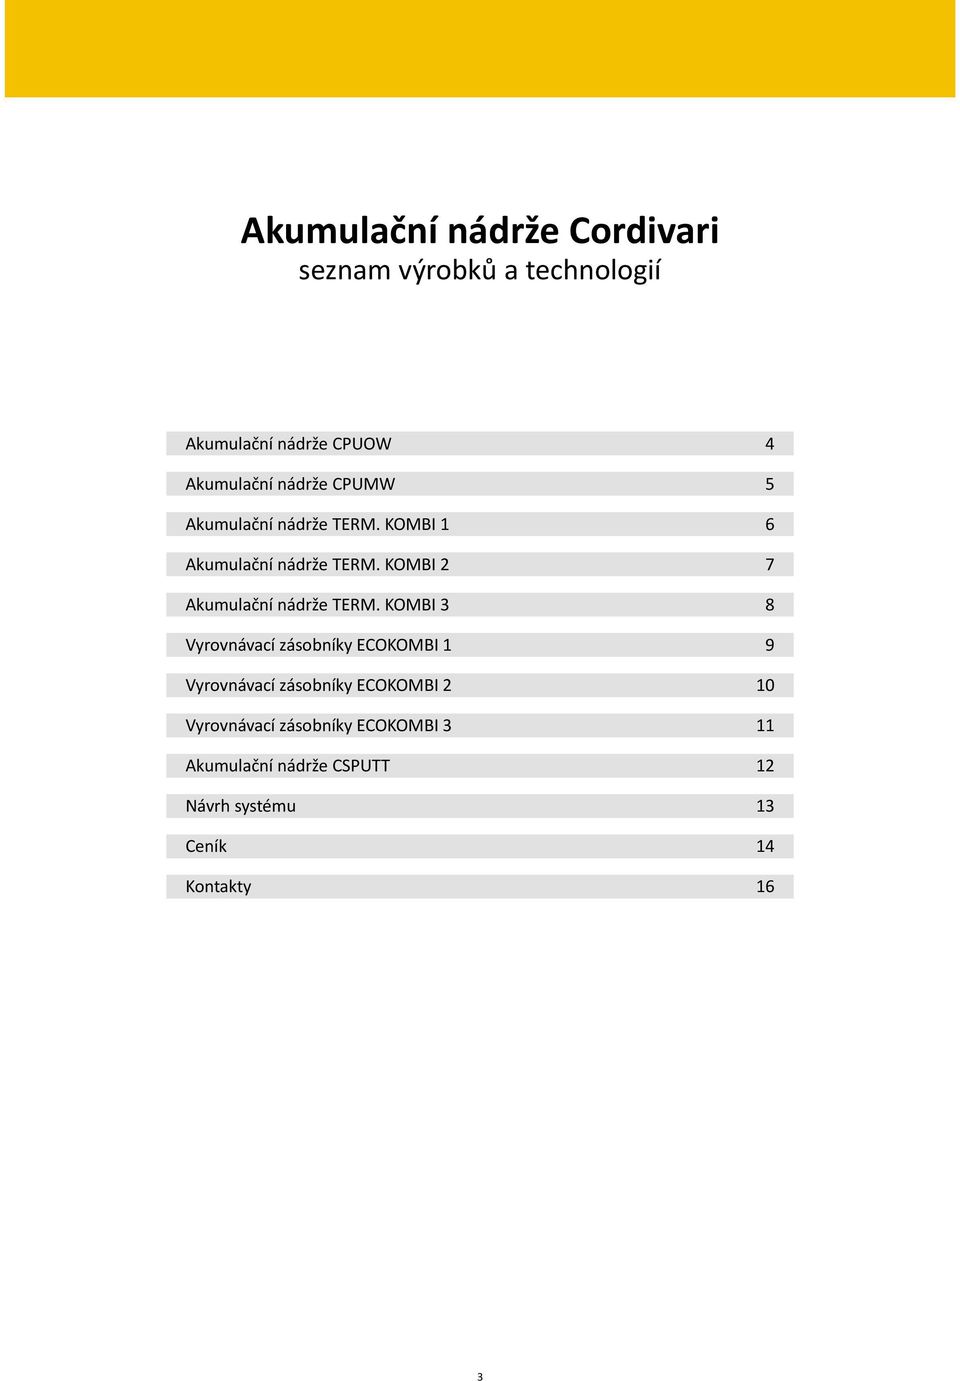 Akumulační nádoby Cordivari. Technické informace Ceník Cordivari - aktuální  nabídka platná od 10/ PDF Stažení zdarma